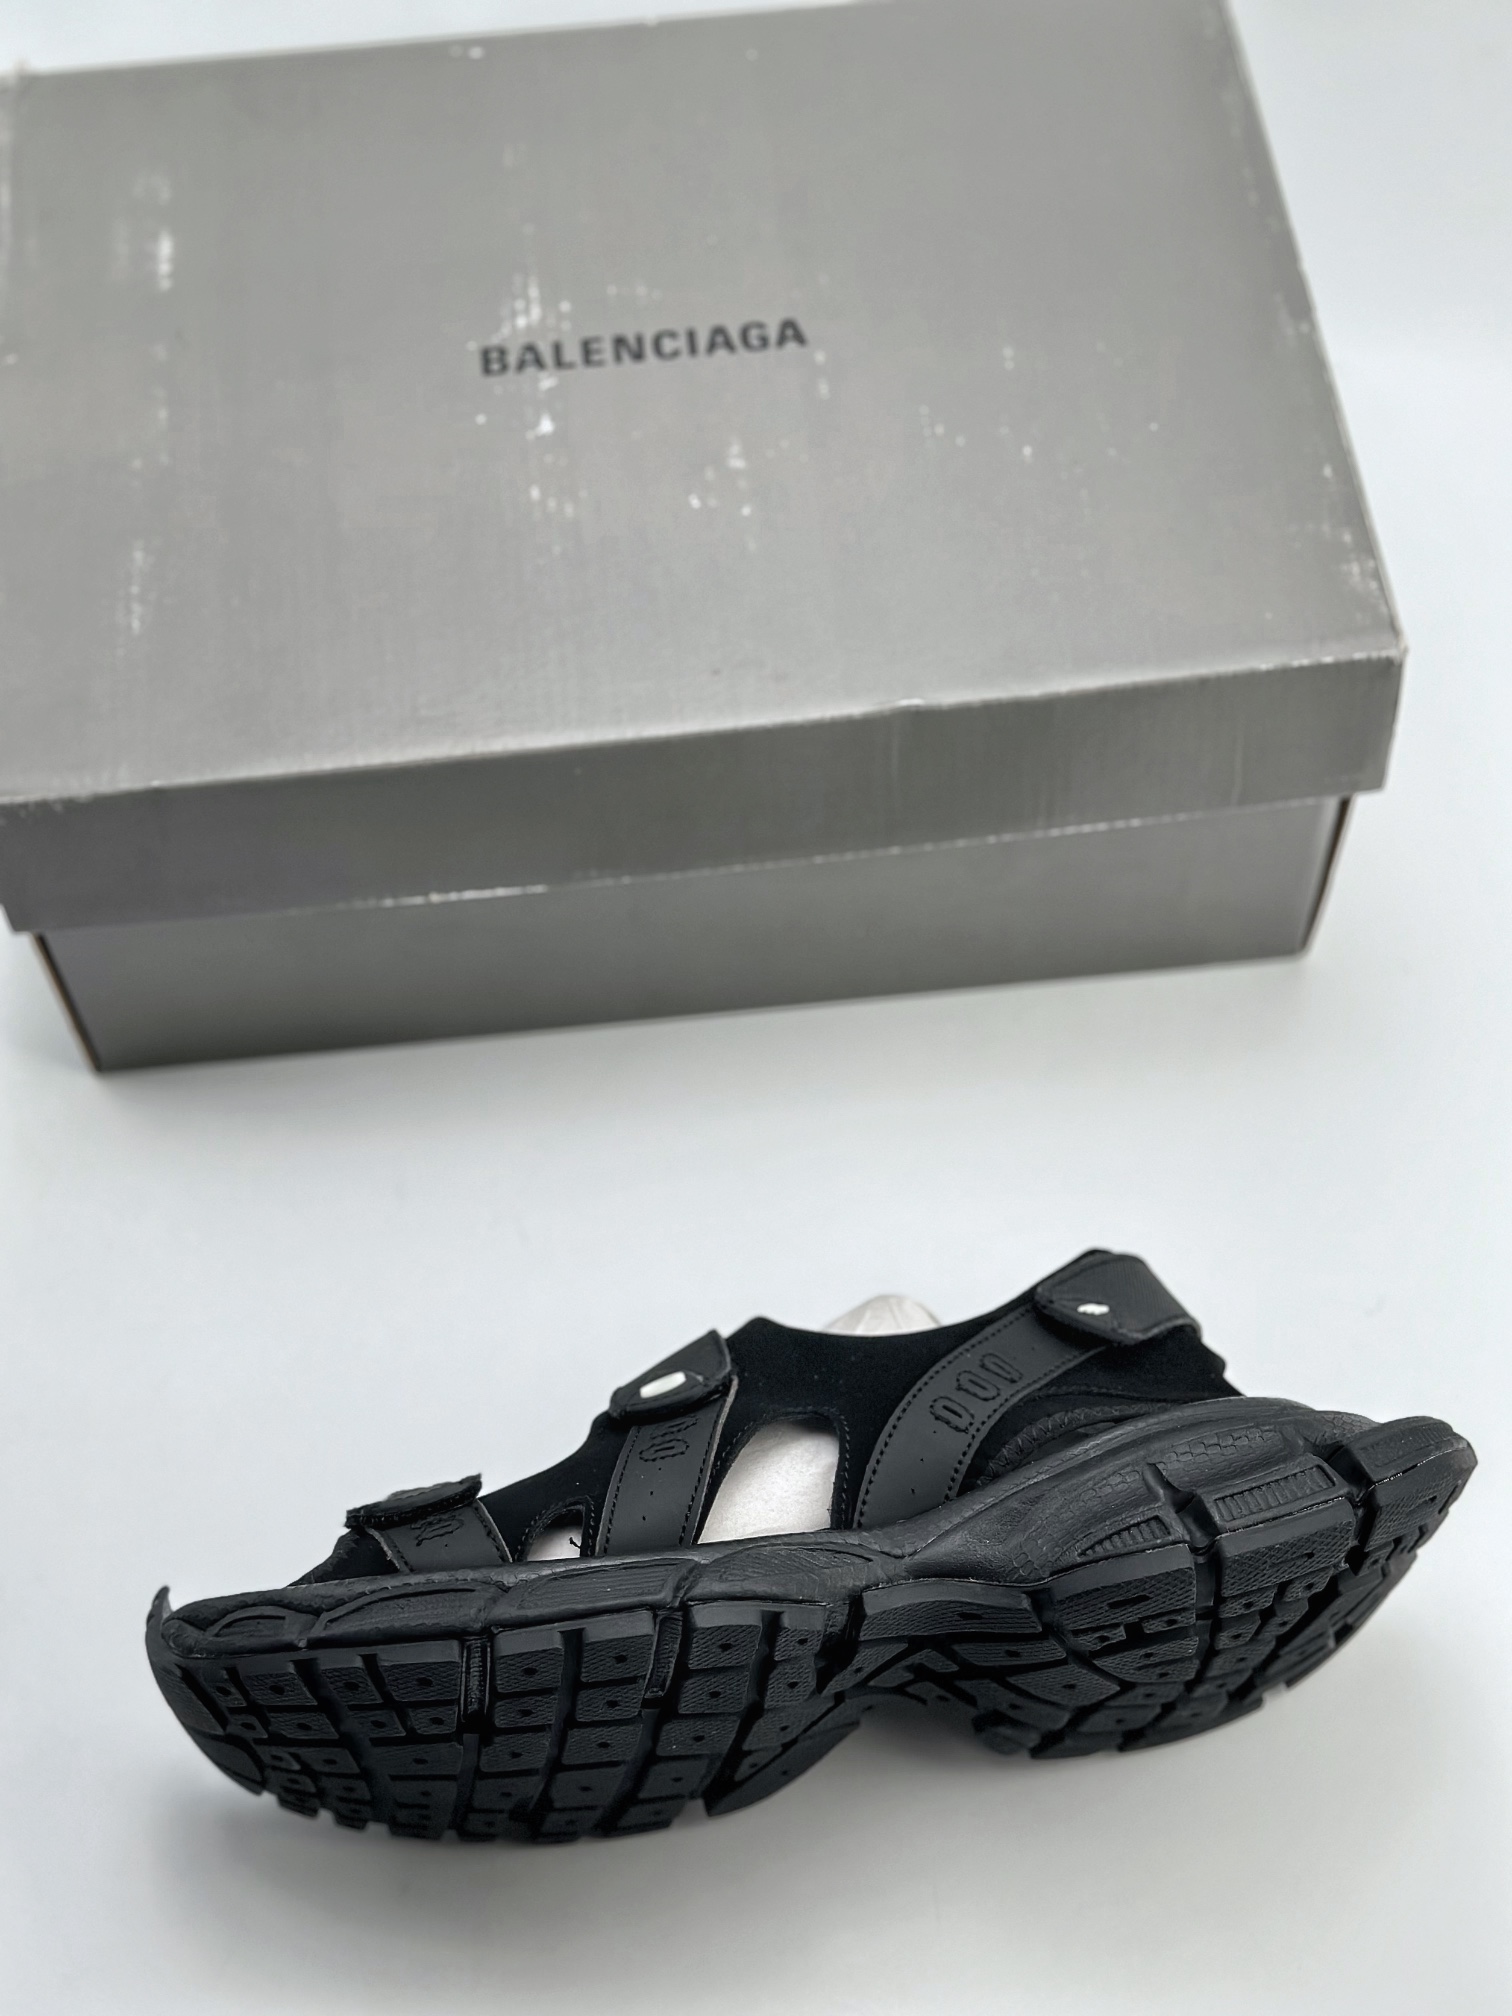 220 巴黎世家/Balenciaga 巴黎世家沙滩鞋 Balenciaga AW22 HD Sneaker 巴黎世家凉鞋 786956 W3XLT 1000